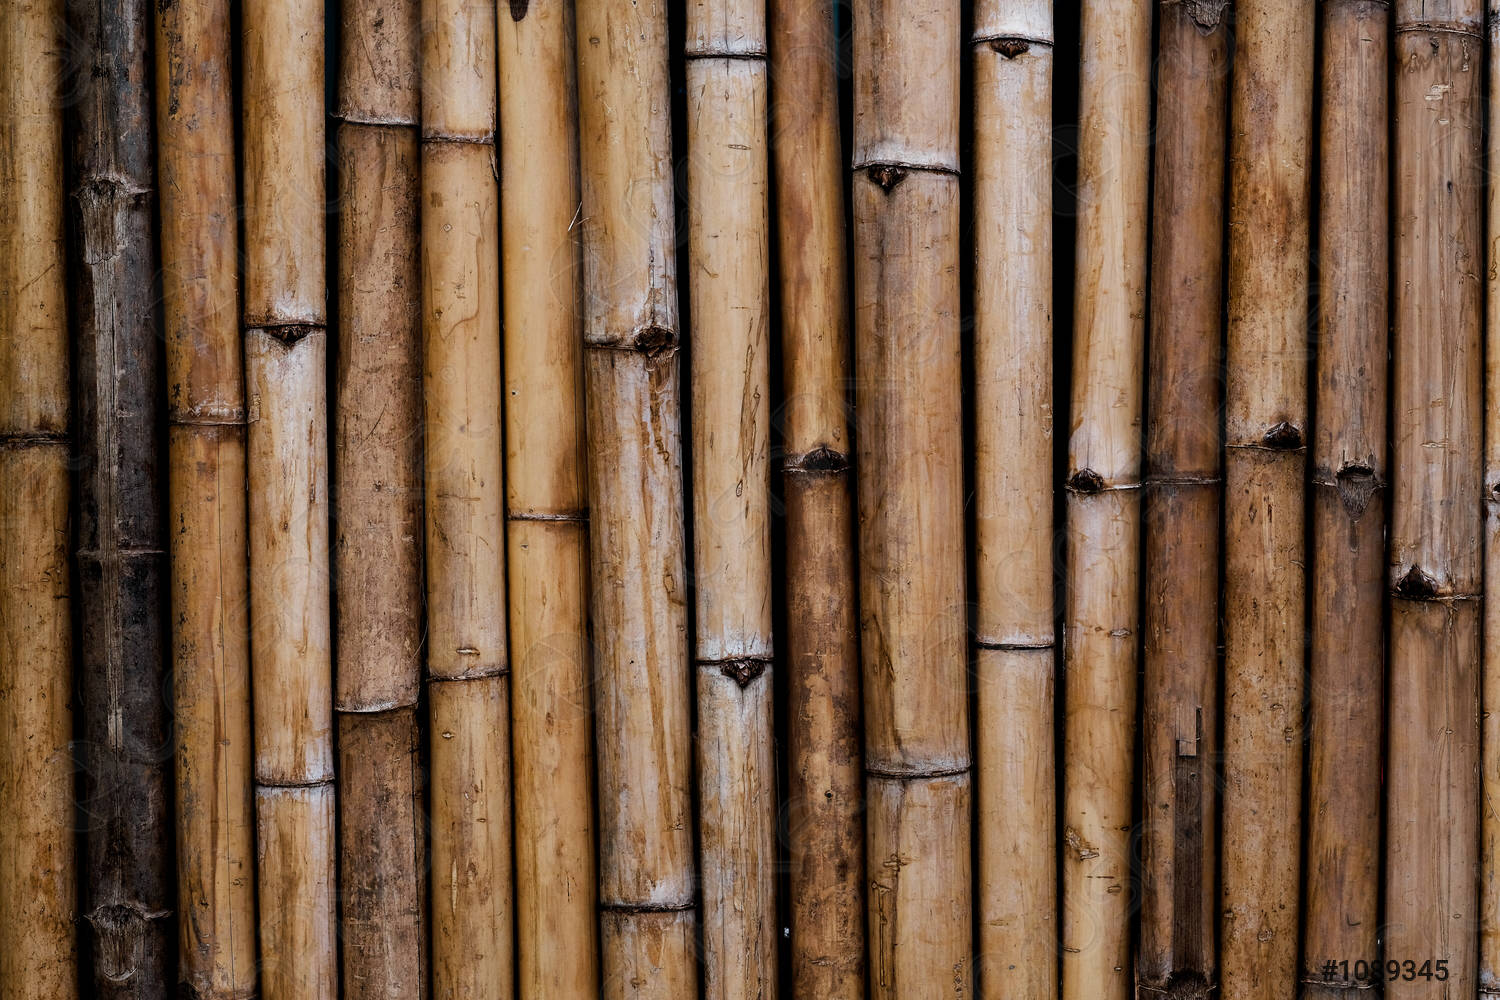 Các loại gỗ tre phổ biến trong sản xuất đồ decor